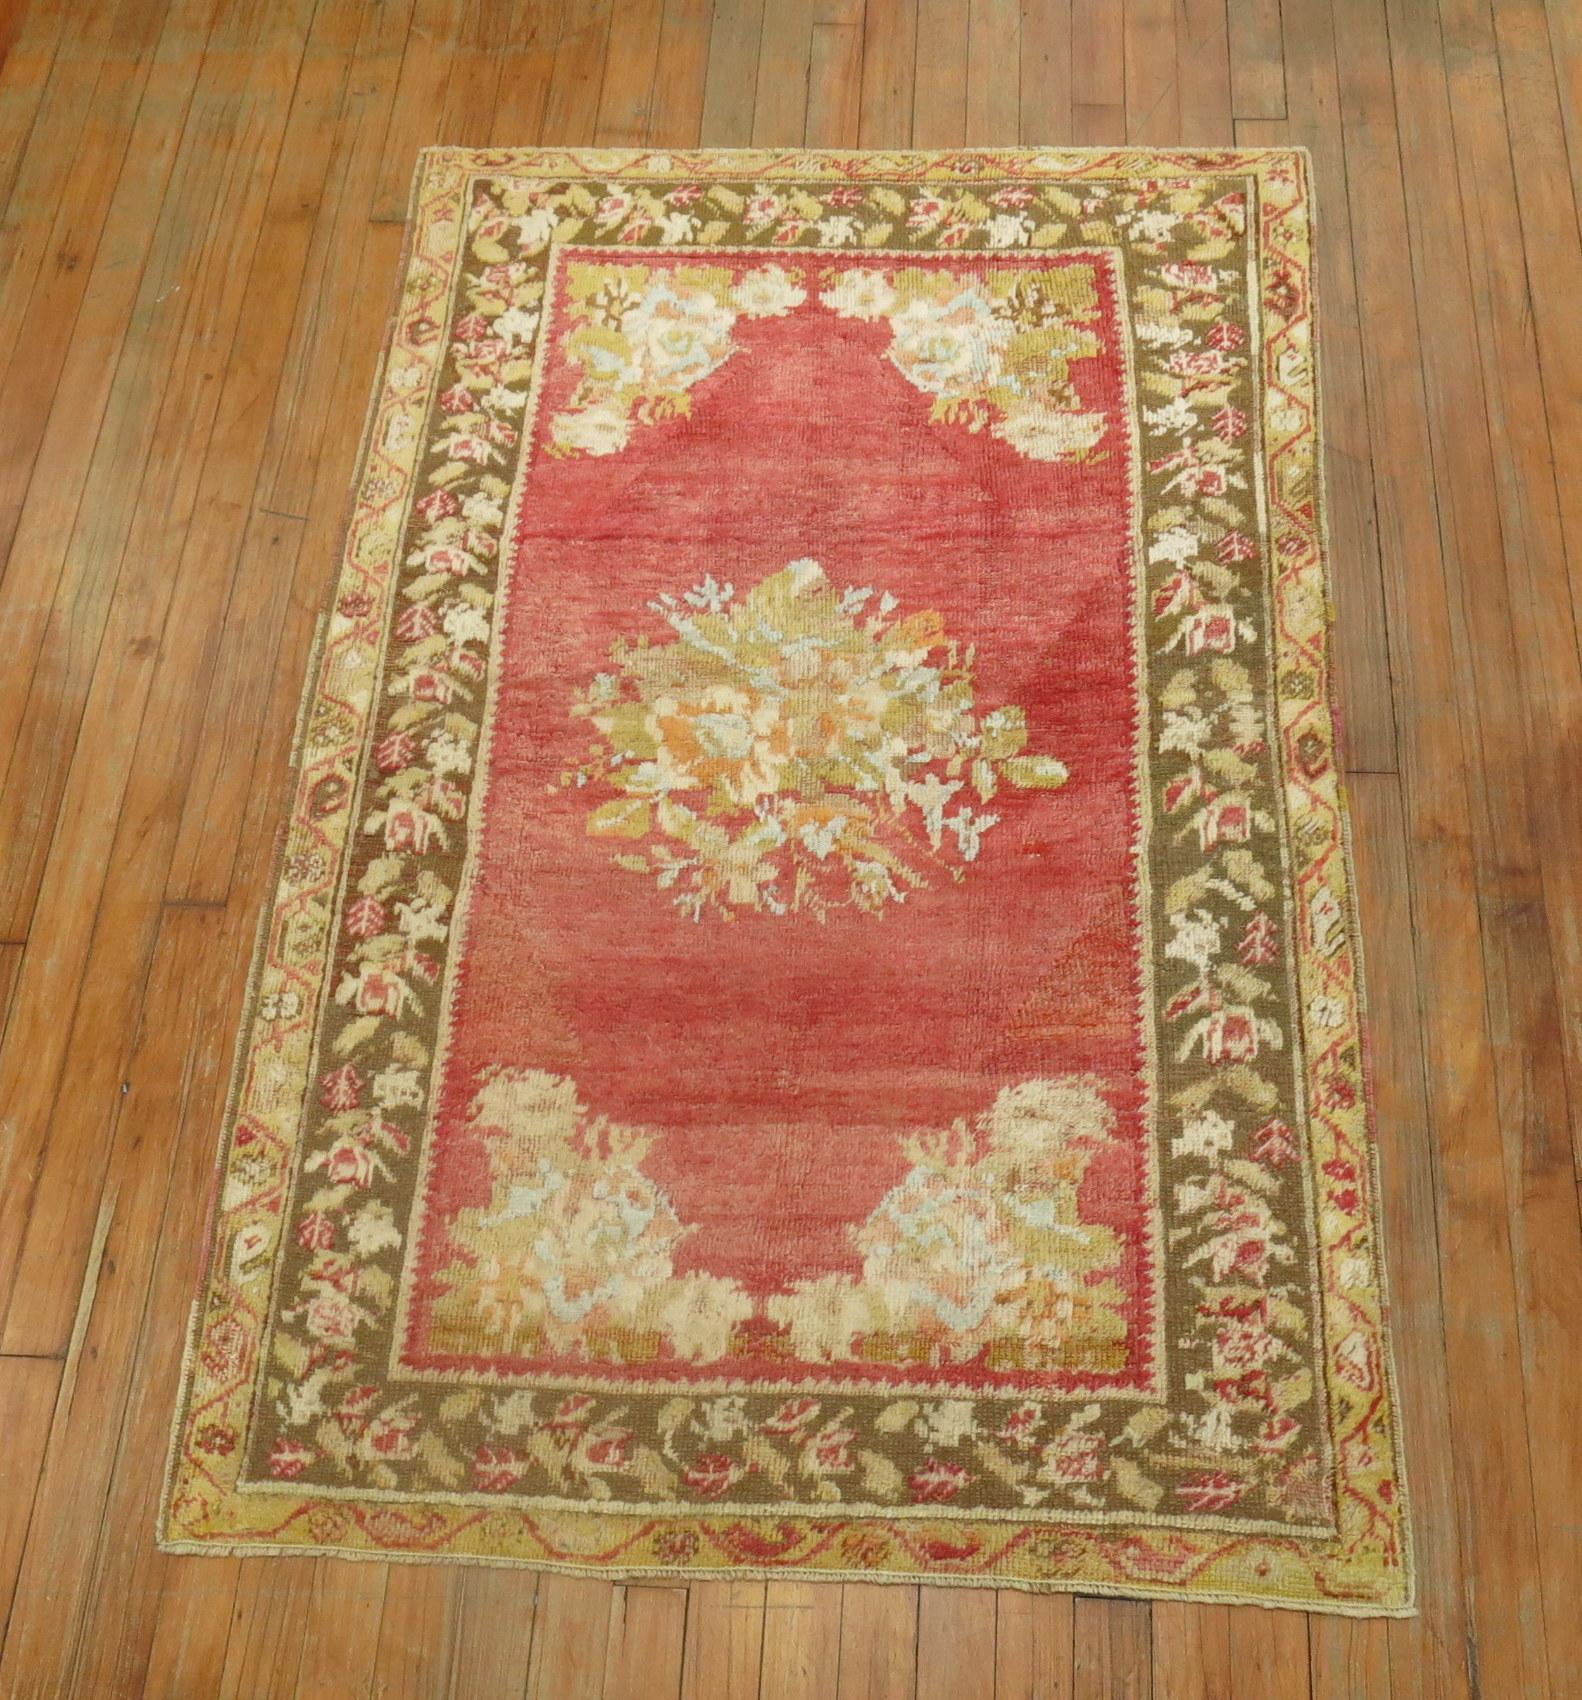 Magnifique tapis ghiordes turc ancien aux couleurs douces, avec un motif floral en médaillon ouvert et une bordure florale.